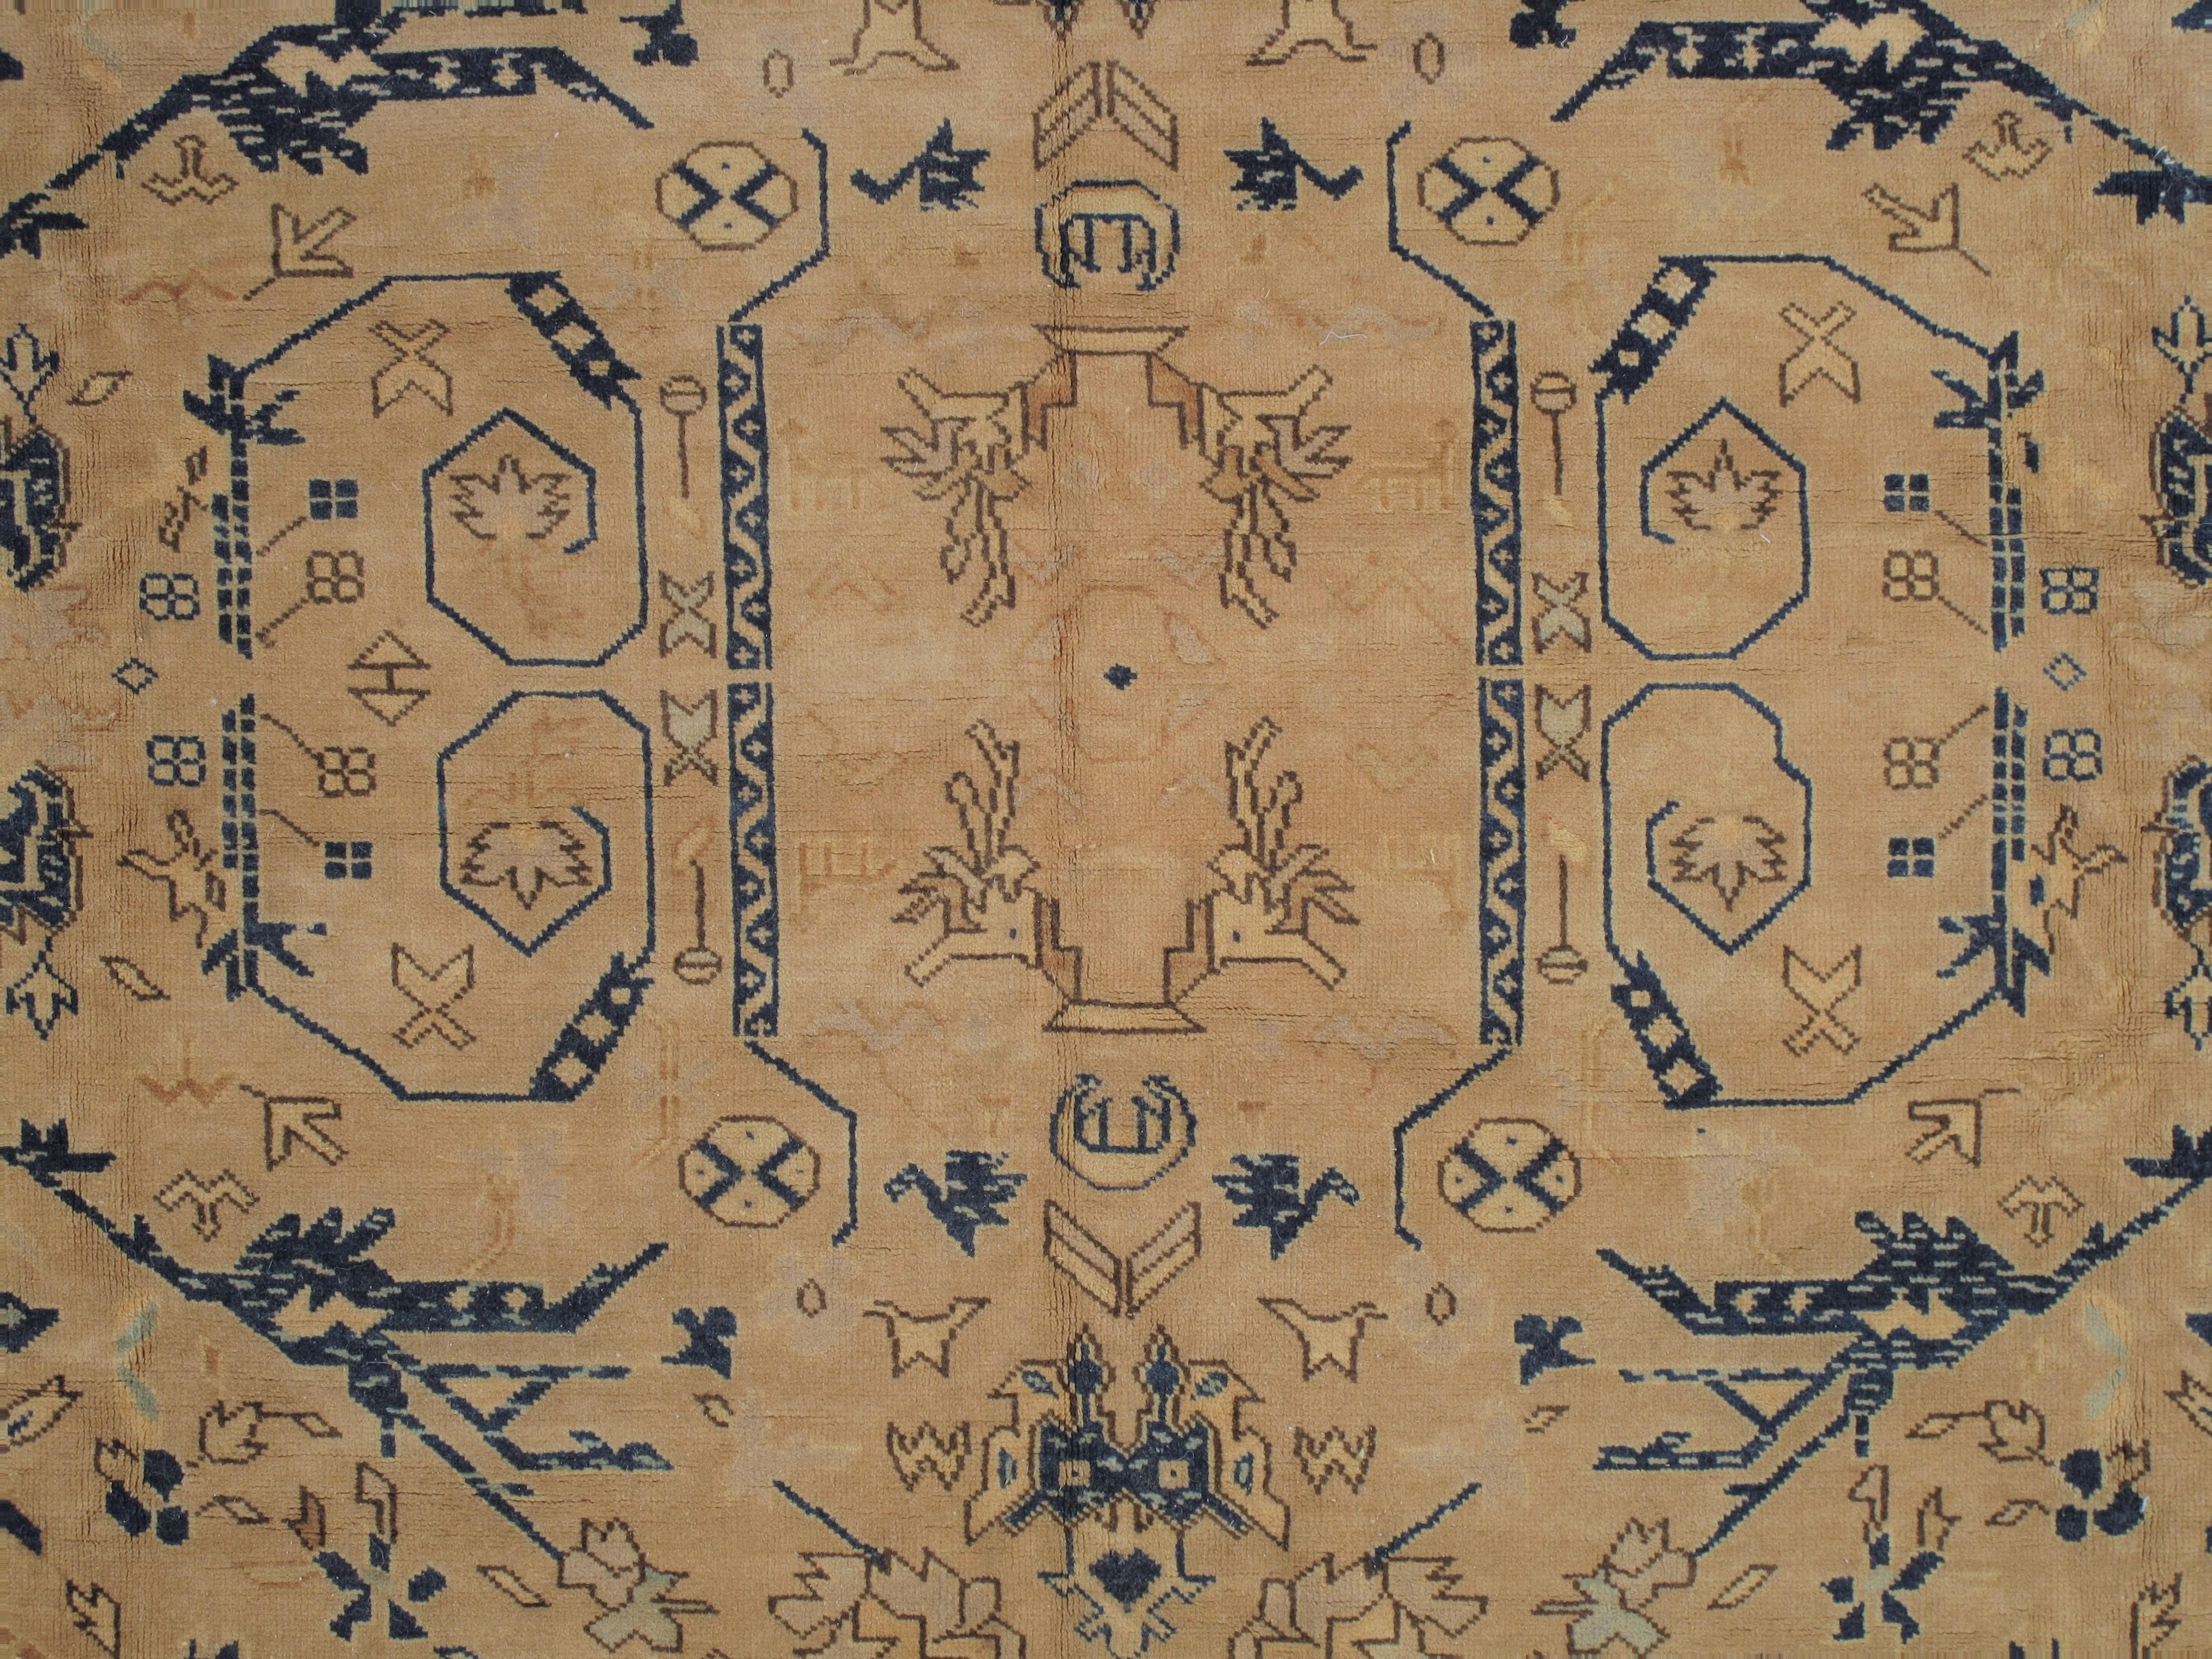 Anglo-indien Tapis indo-mahal ancien, fait main, design oriental bleu, taupe, crème sur toute la surface en vente